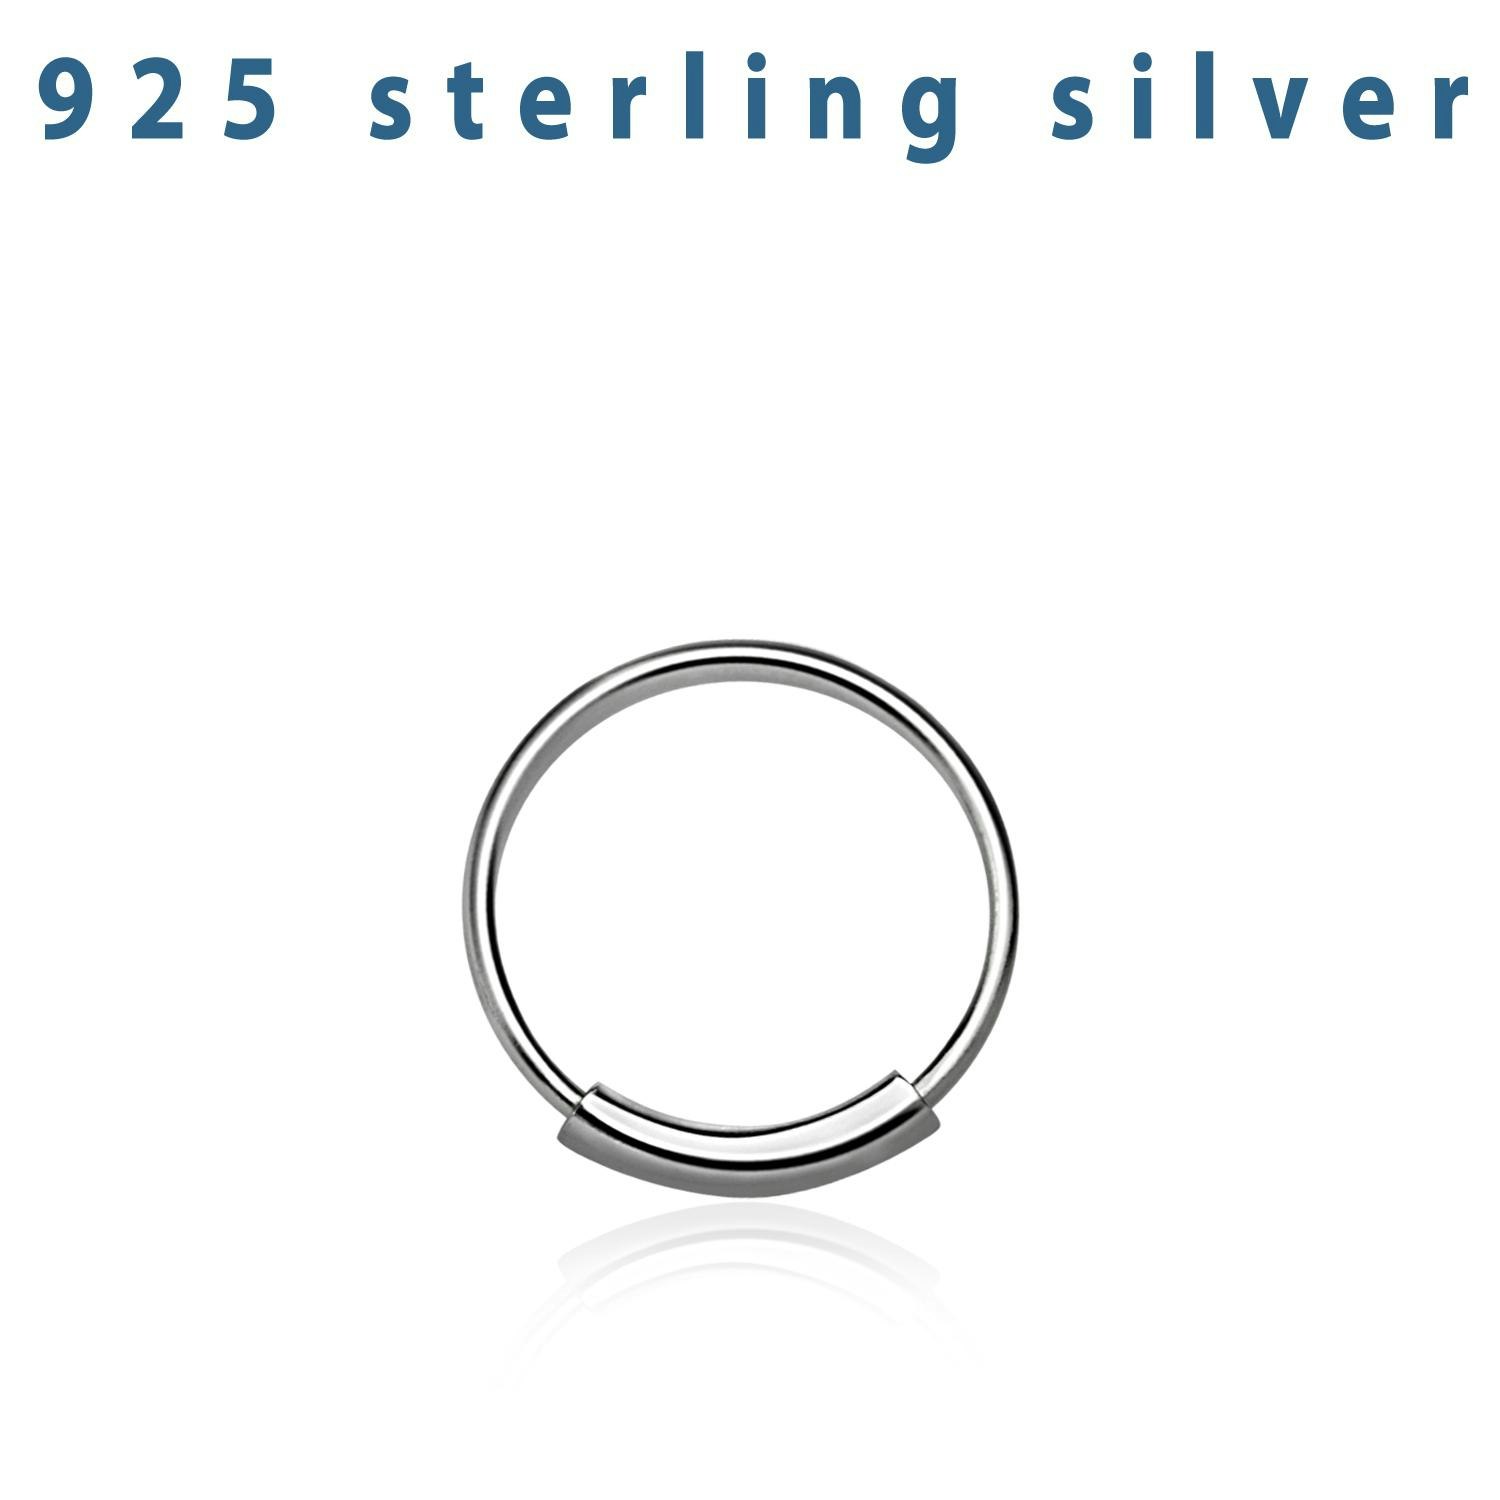 Näsring / sömlös ring i 925 silver 8mm